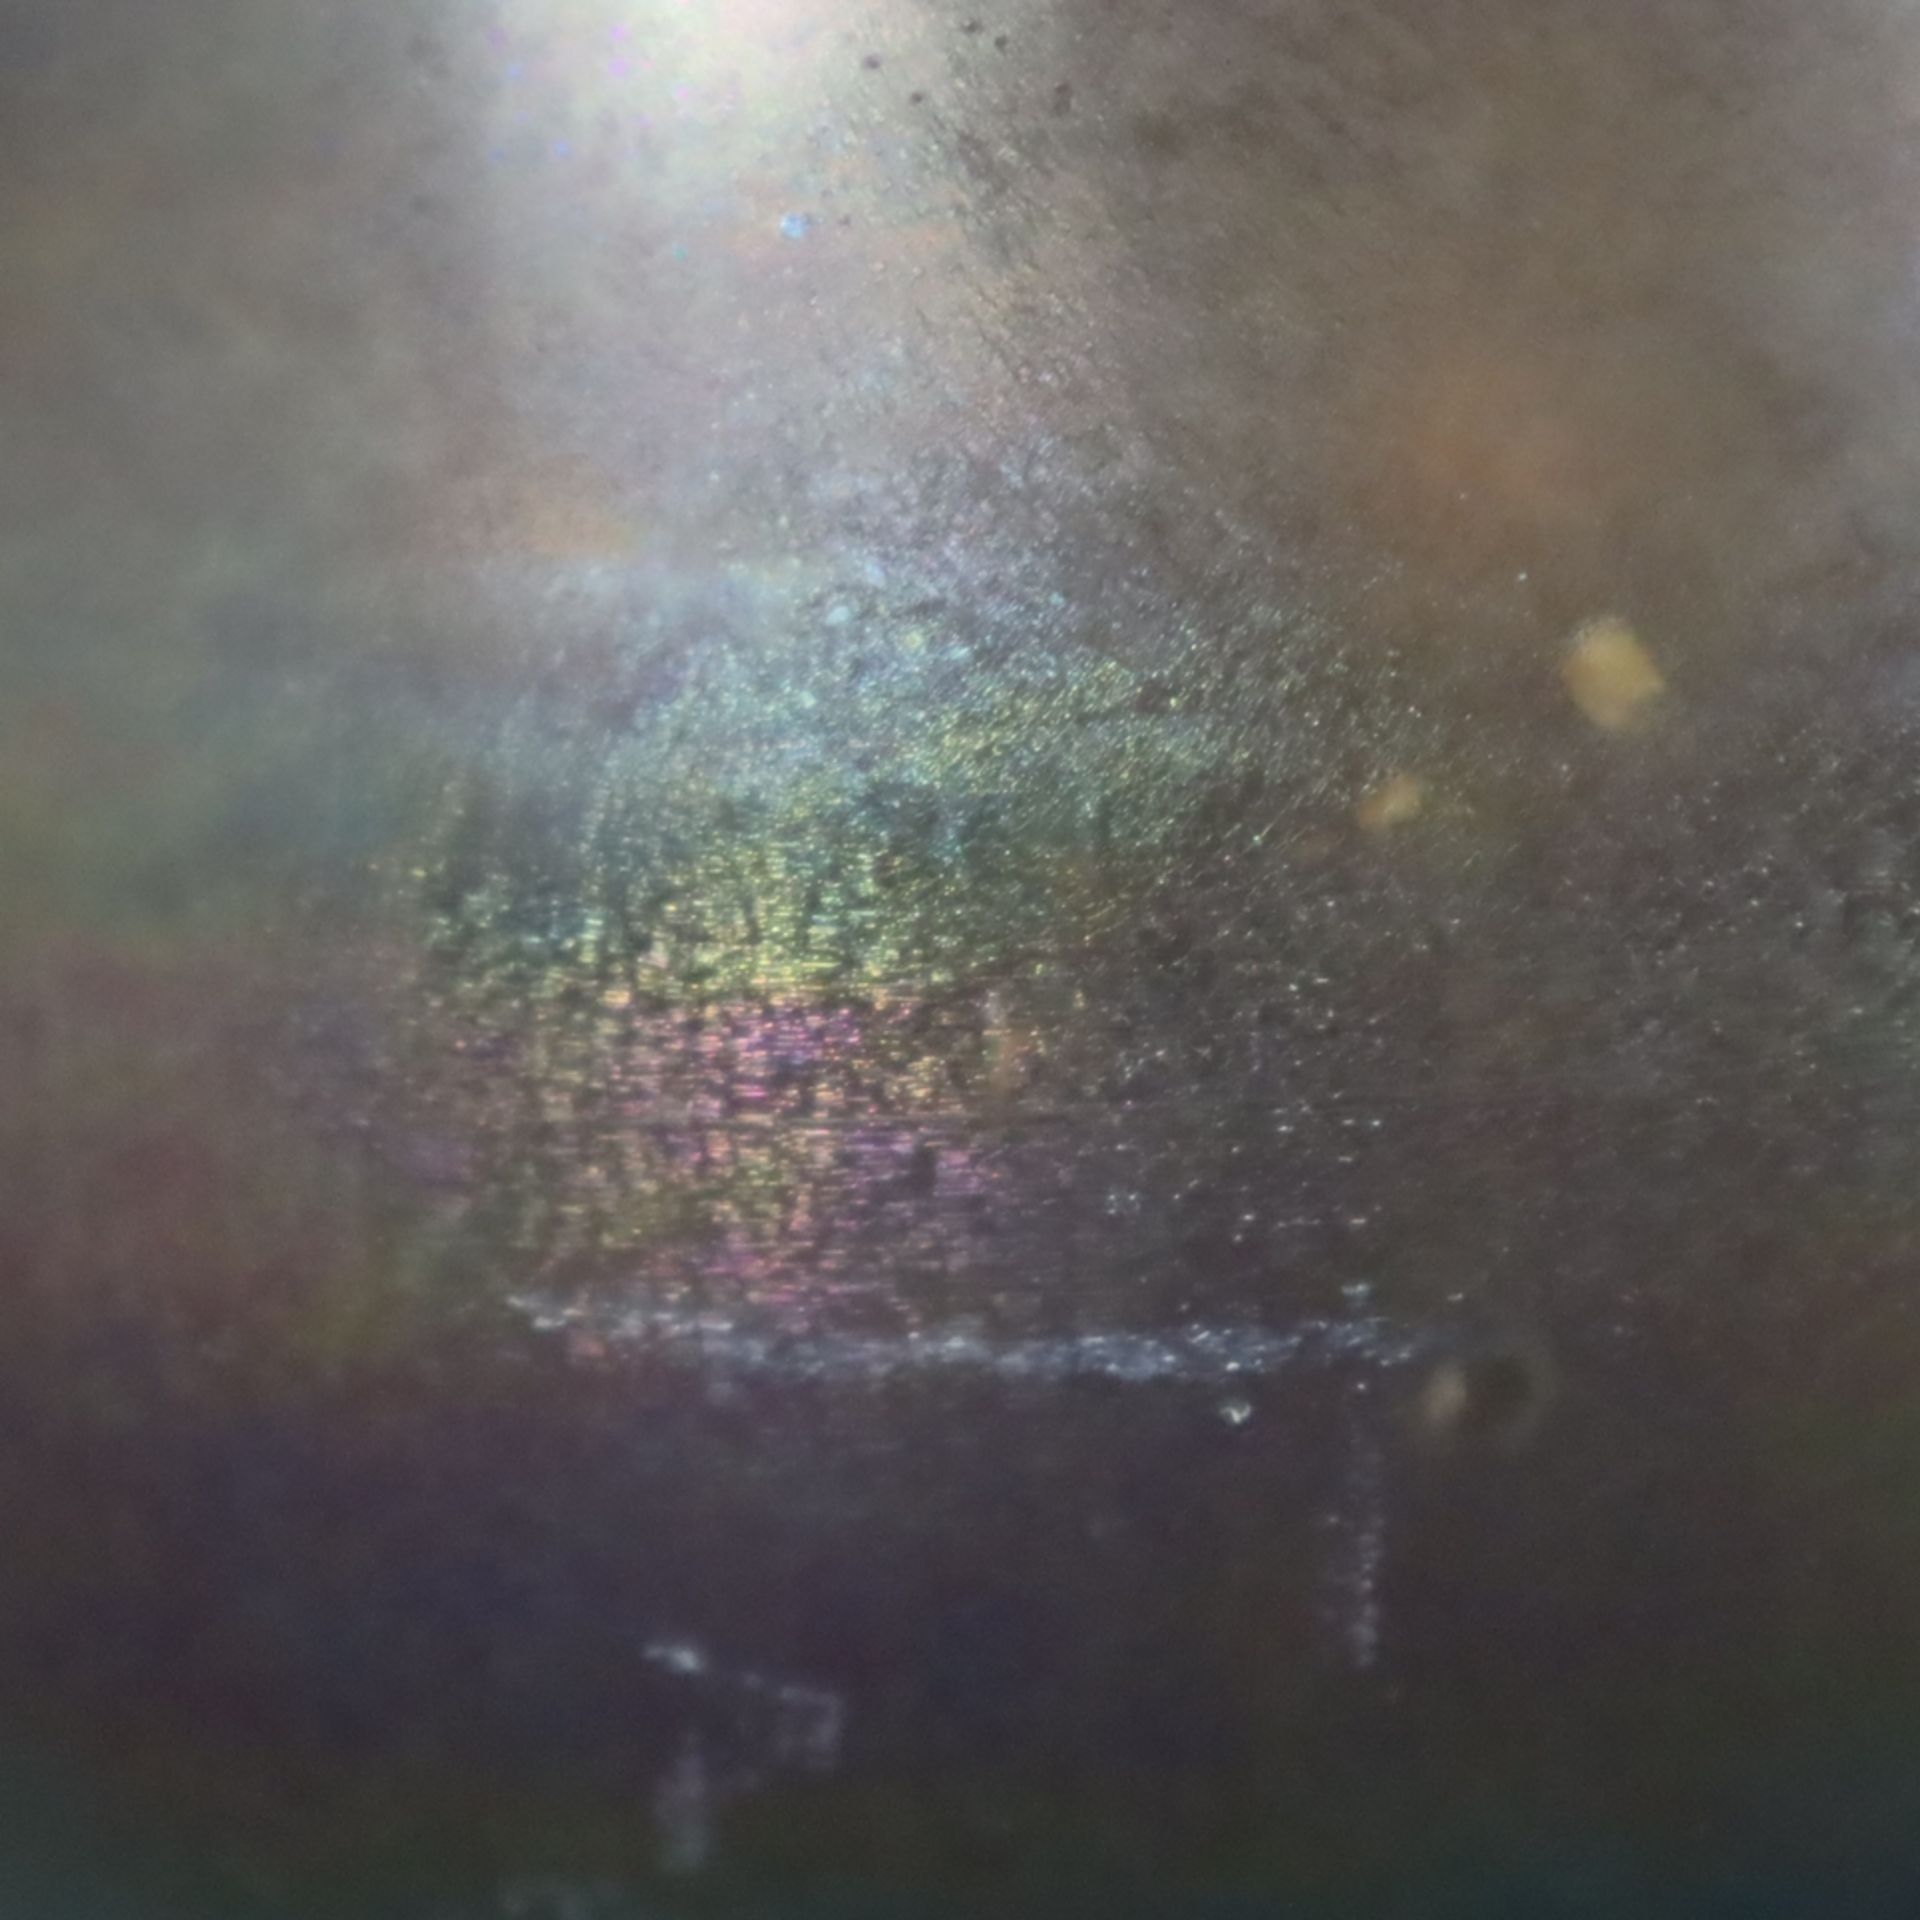 Jugendstil-Blumentopf - irisiertes Glas, bauchige Form, ausgeschliffener Bodenabriss, Gebrauchsspur - Image 3 of 7